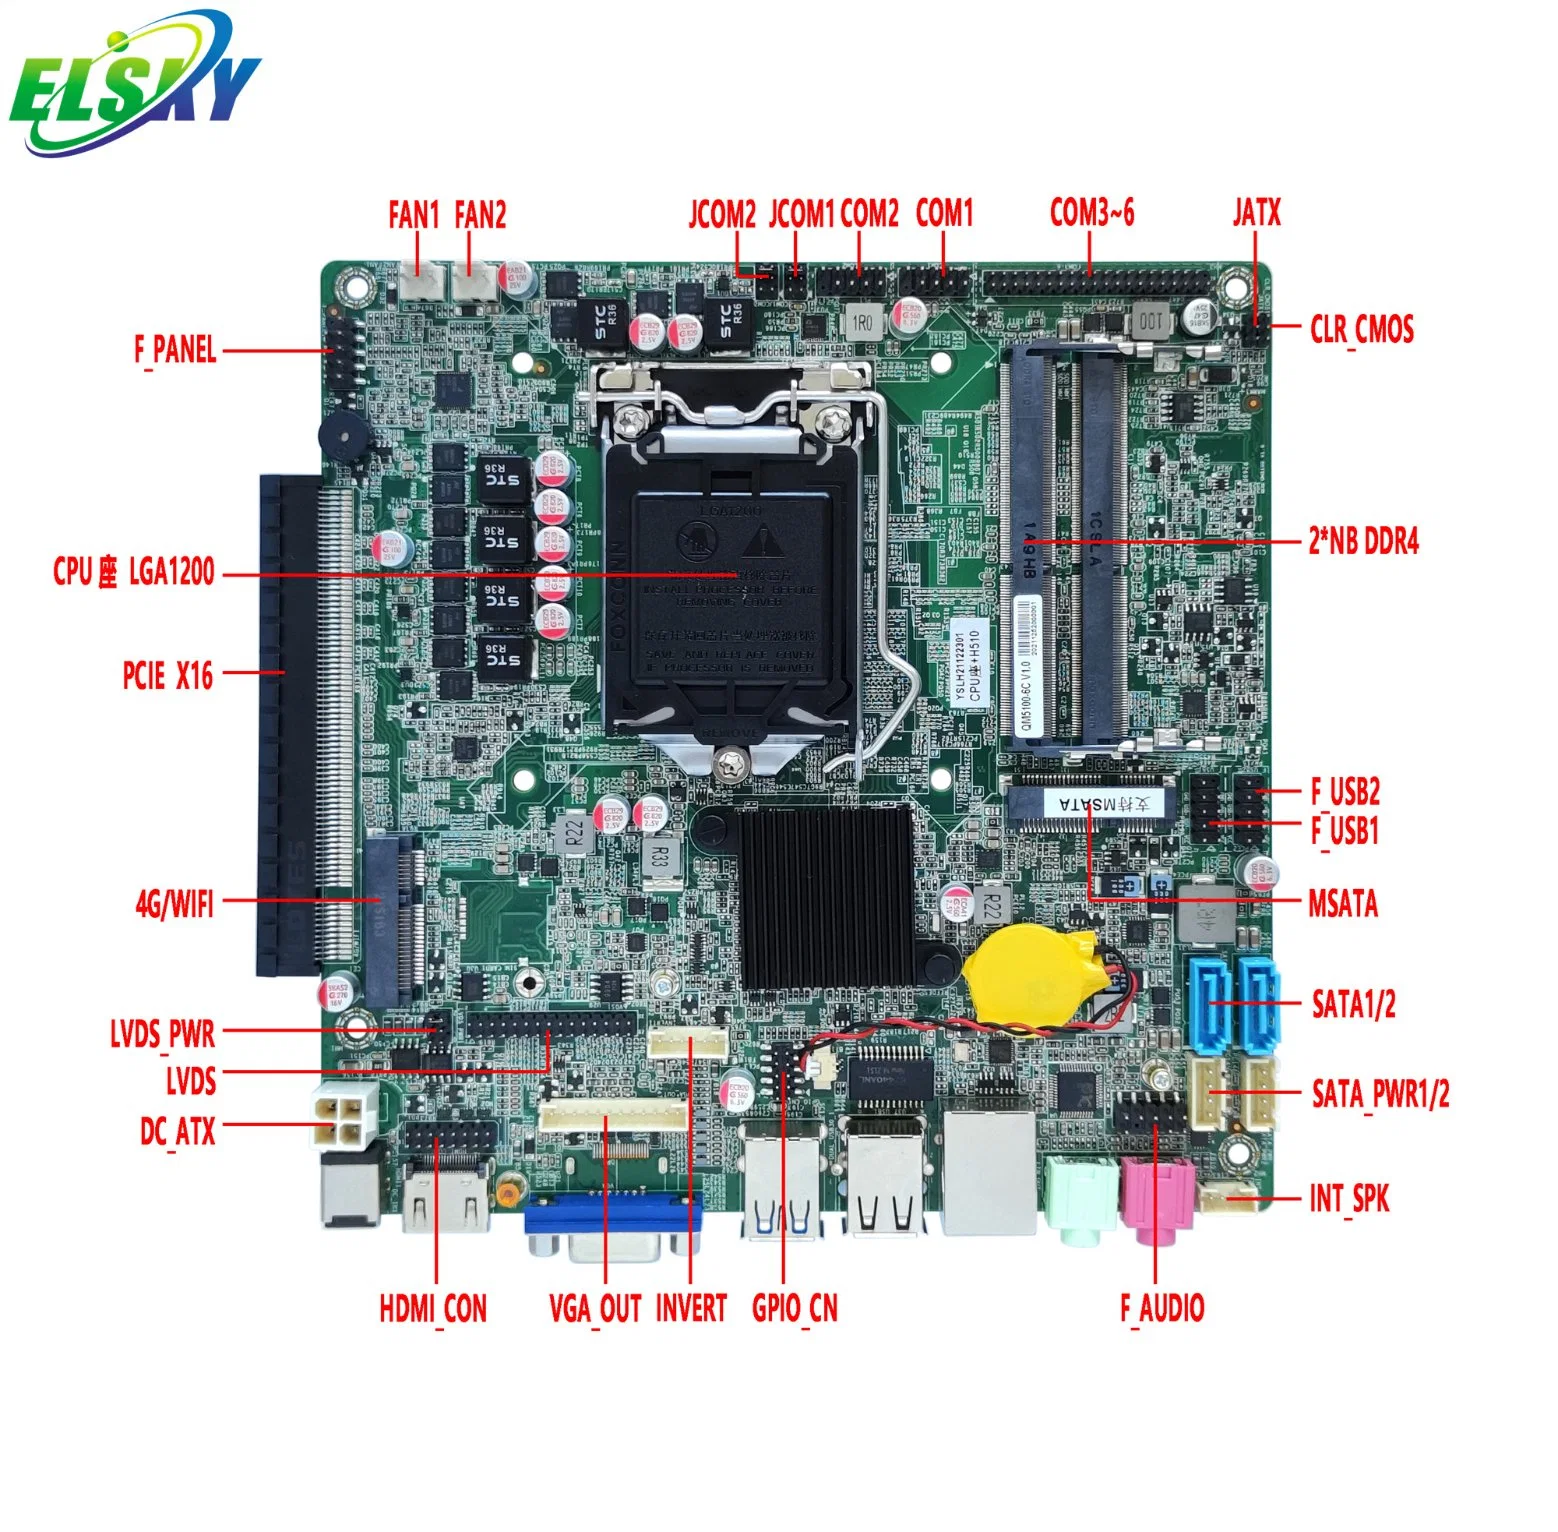 اللوحة الأم للكمبيوتر Elsky Mini Qm5100 مع وحدة المعالجة المركزية Comet Lake 10th Gen Core i7-10700 H510 LGA1200 2*DDR4 Maxx128g 2LAN RS232 12 فولت/19 فولت الطاقة